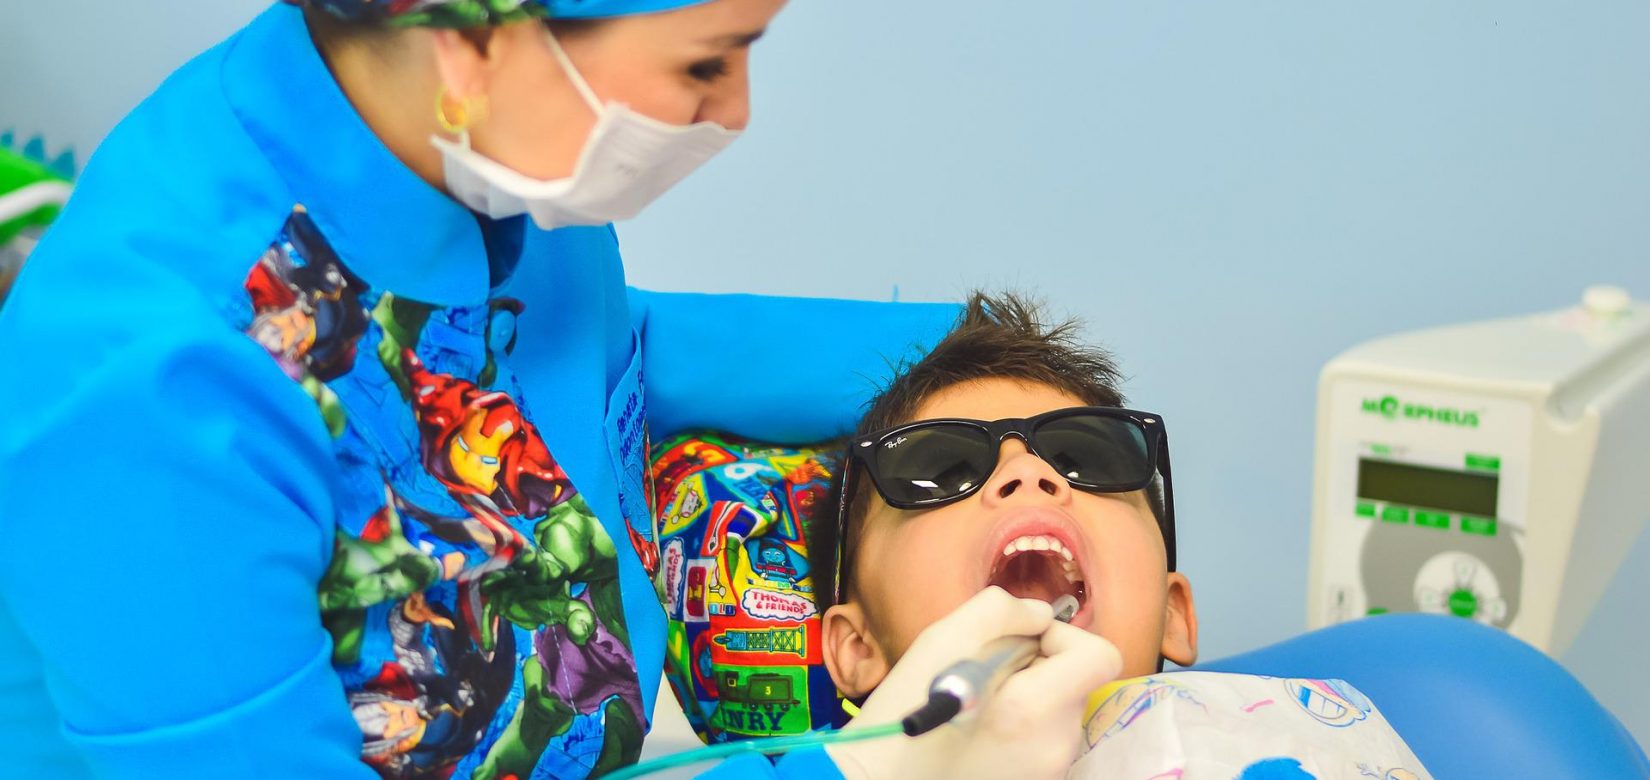 Δωρεάν οδοντιατρικές υπηρεσίες για παιδιά στην Αθήνα - Που θα απευθυνθείται